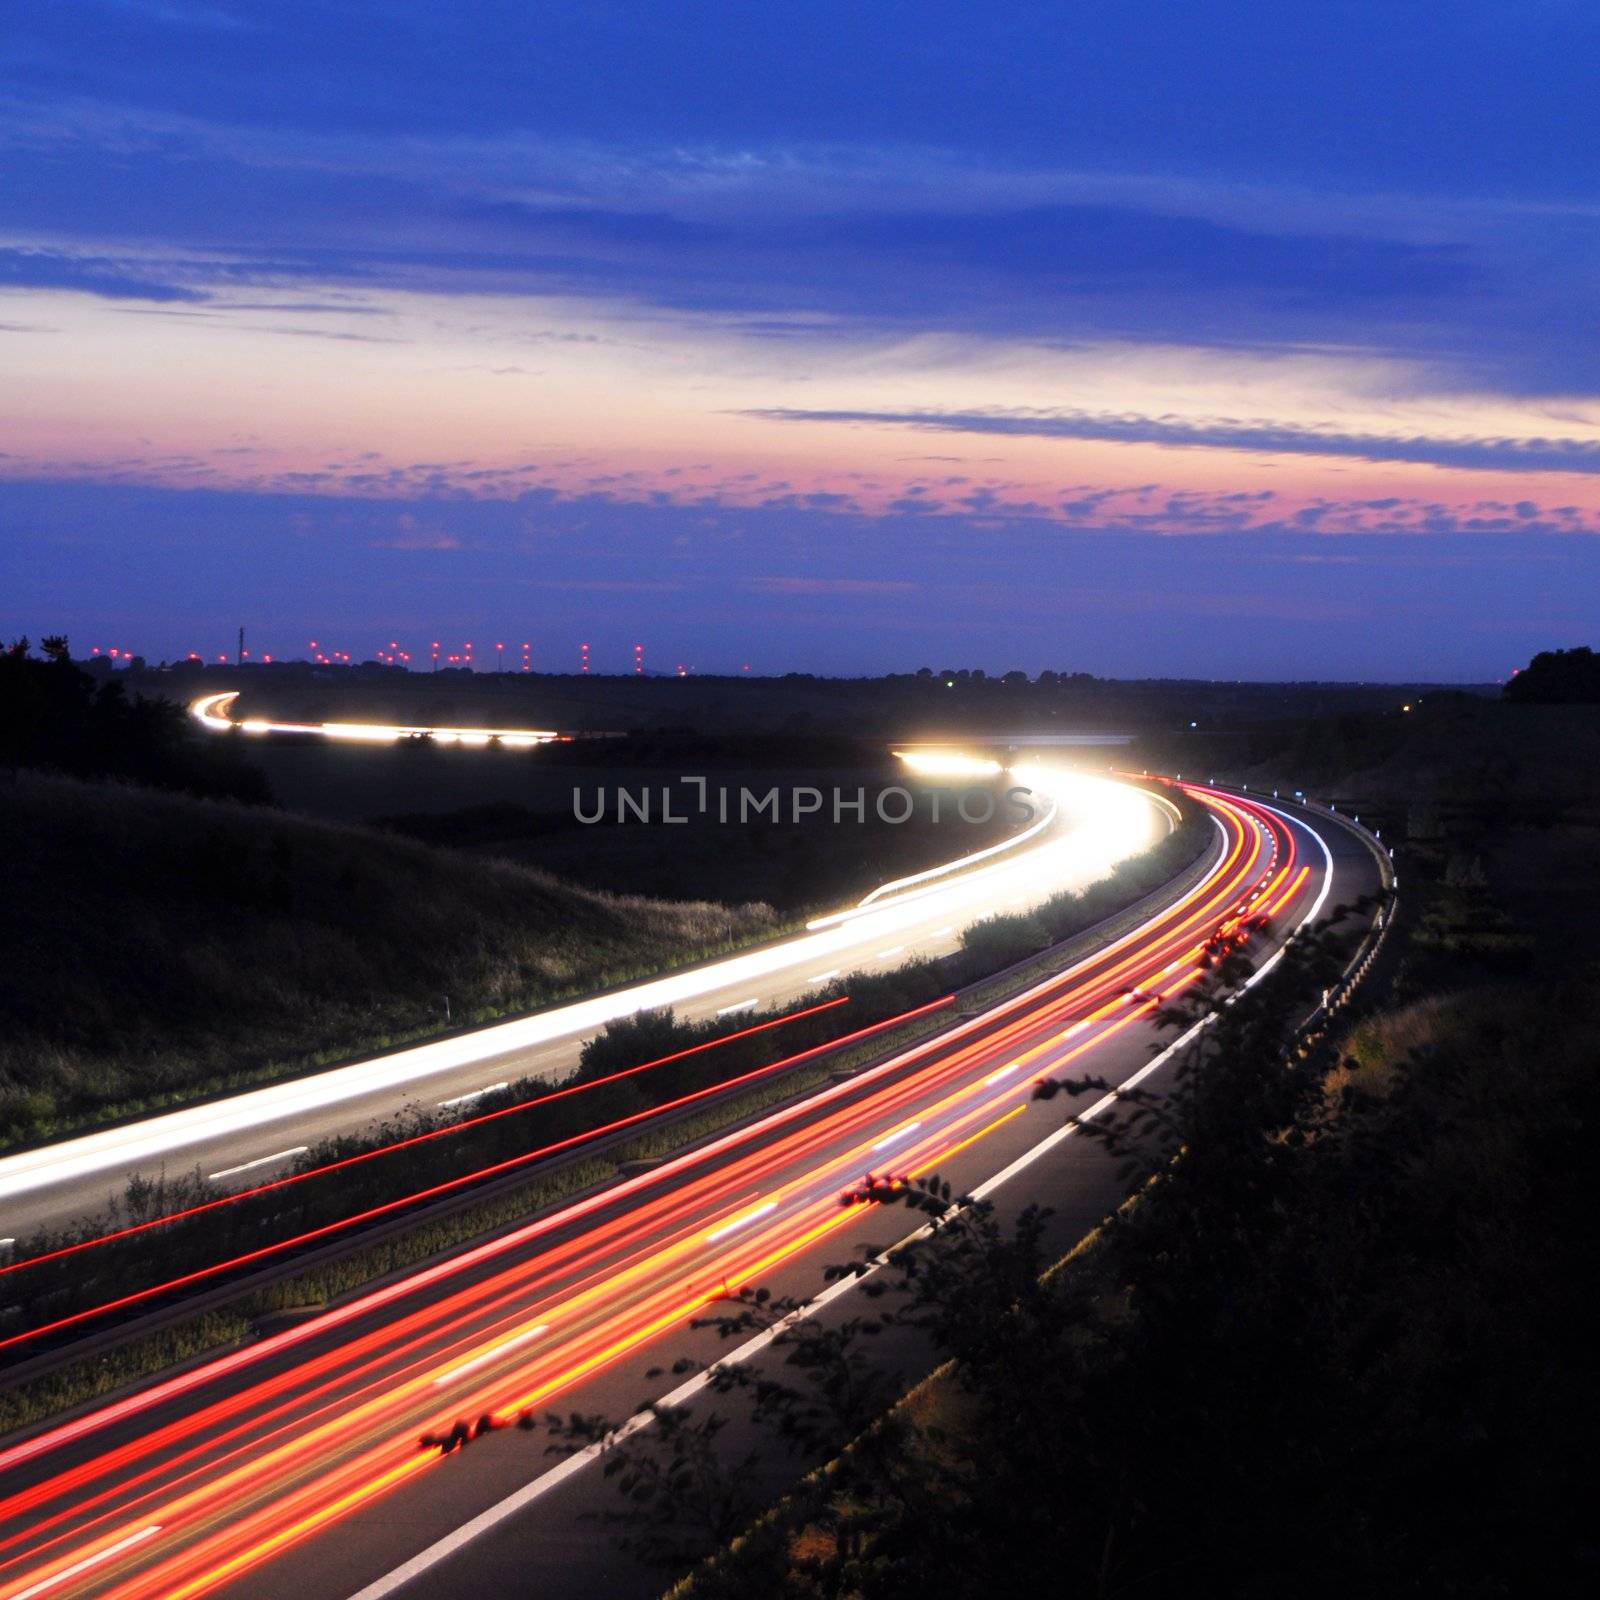 night traffic on highway by gunnar3000